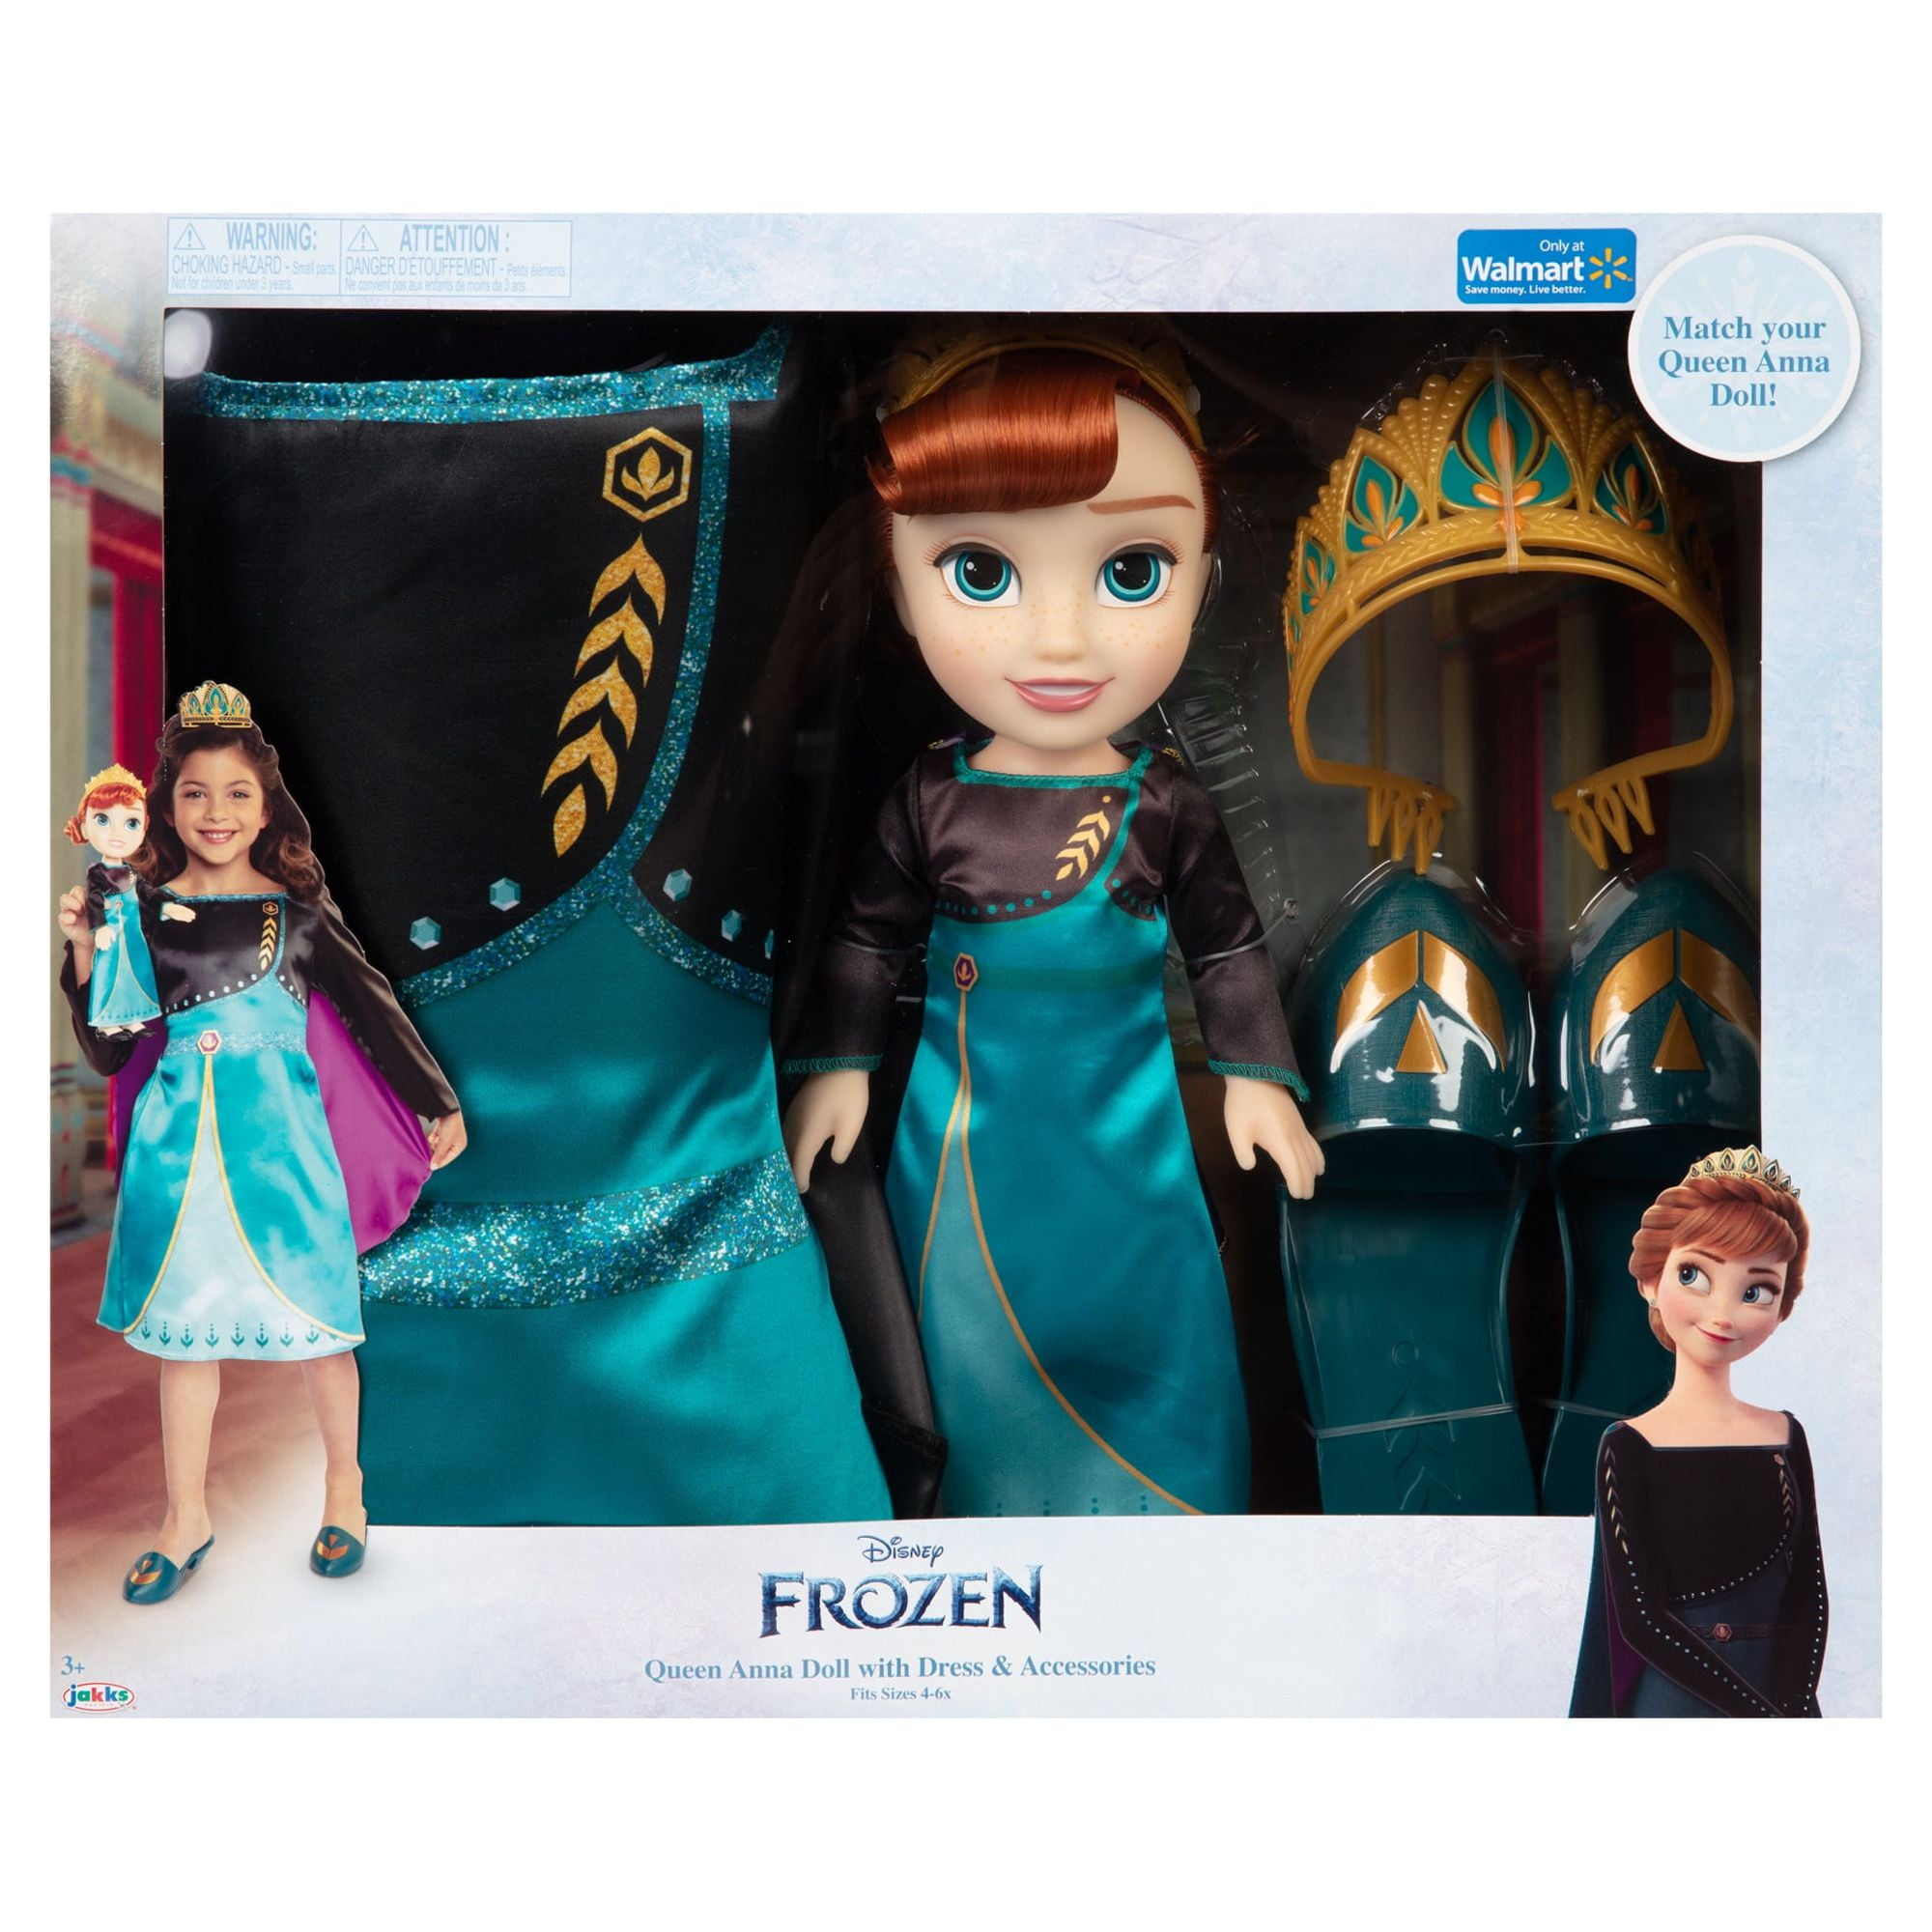 Boneca Disney Frozen Elsa - Hasbro - 29cm